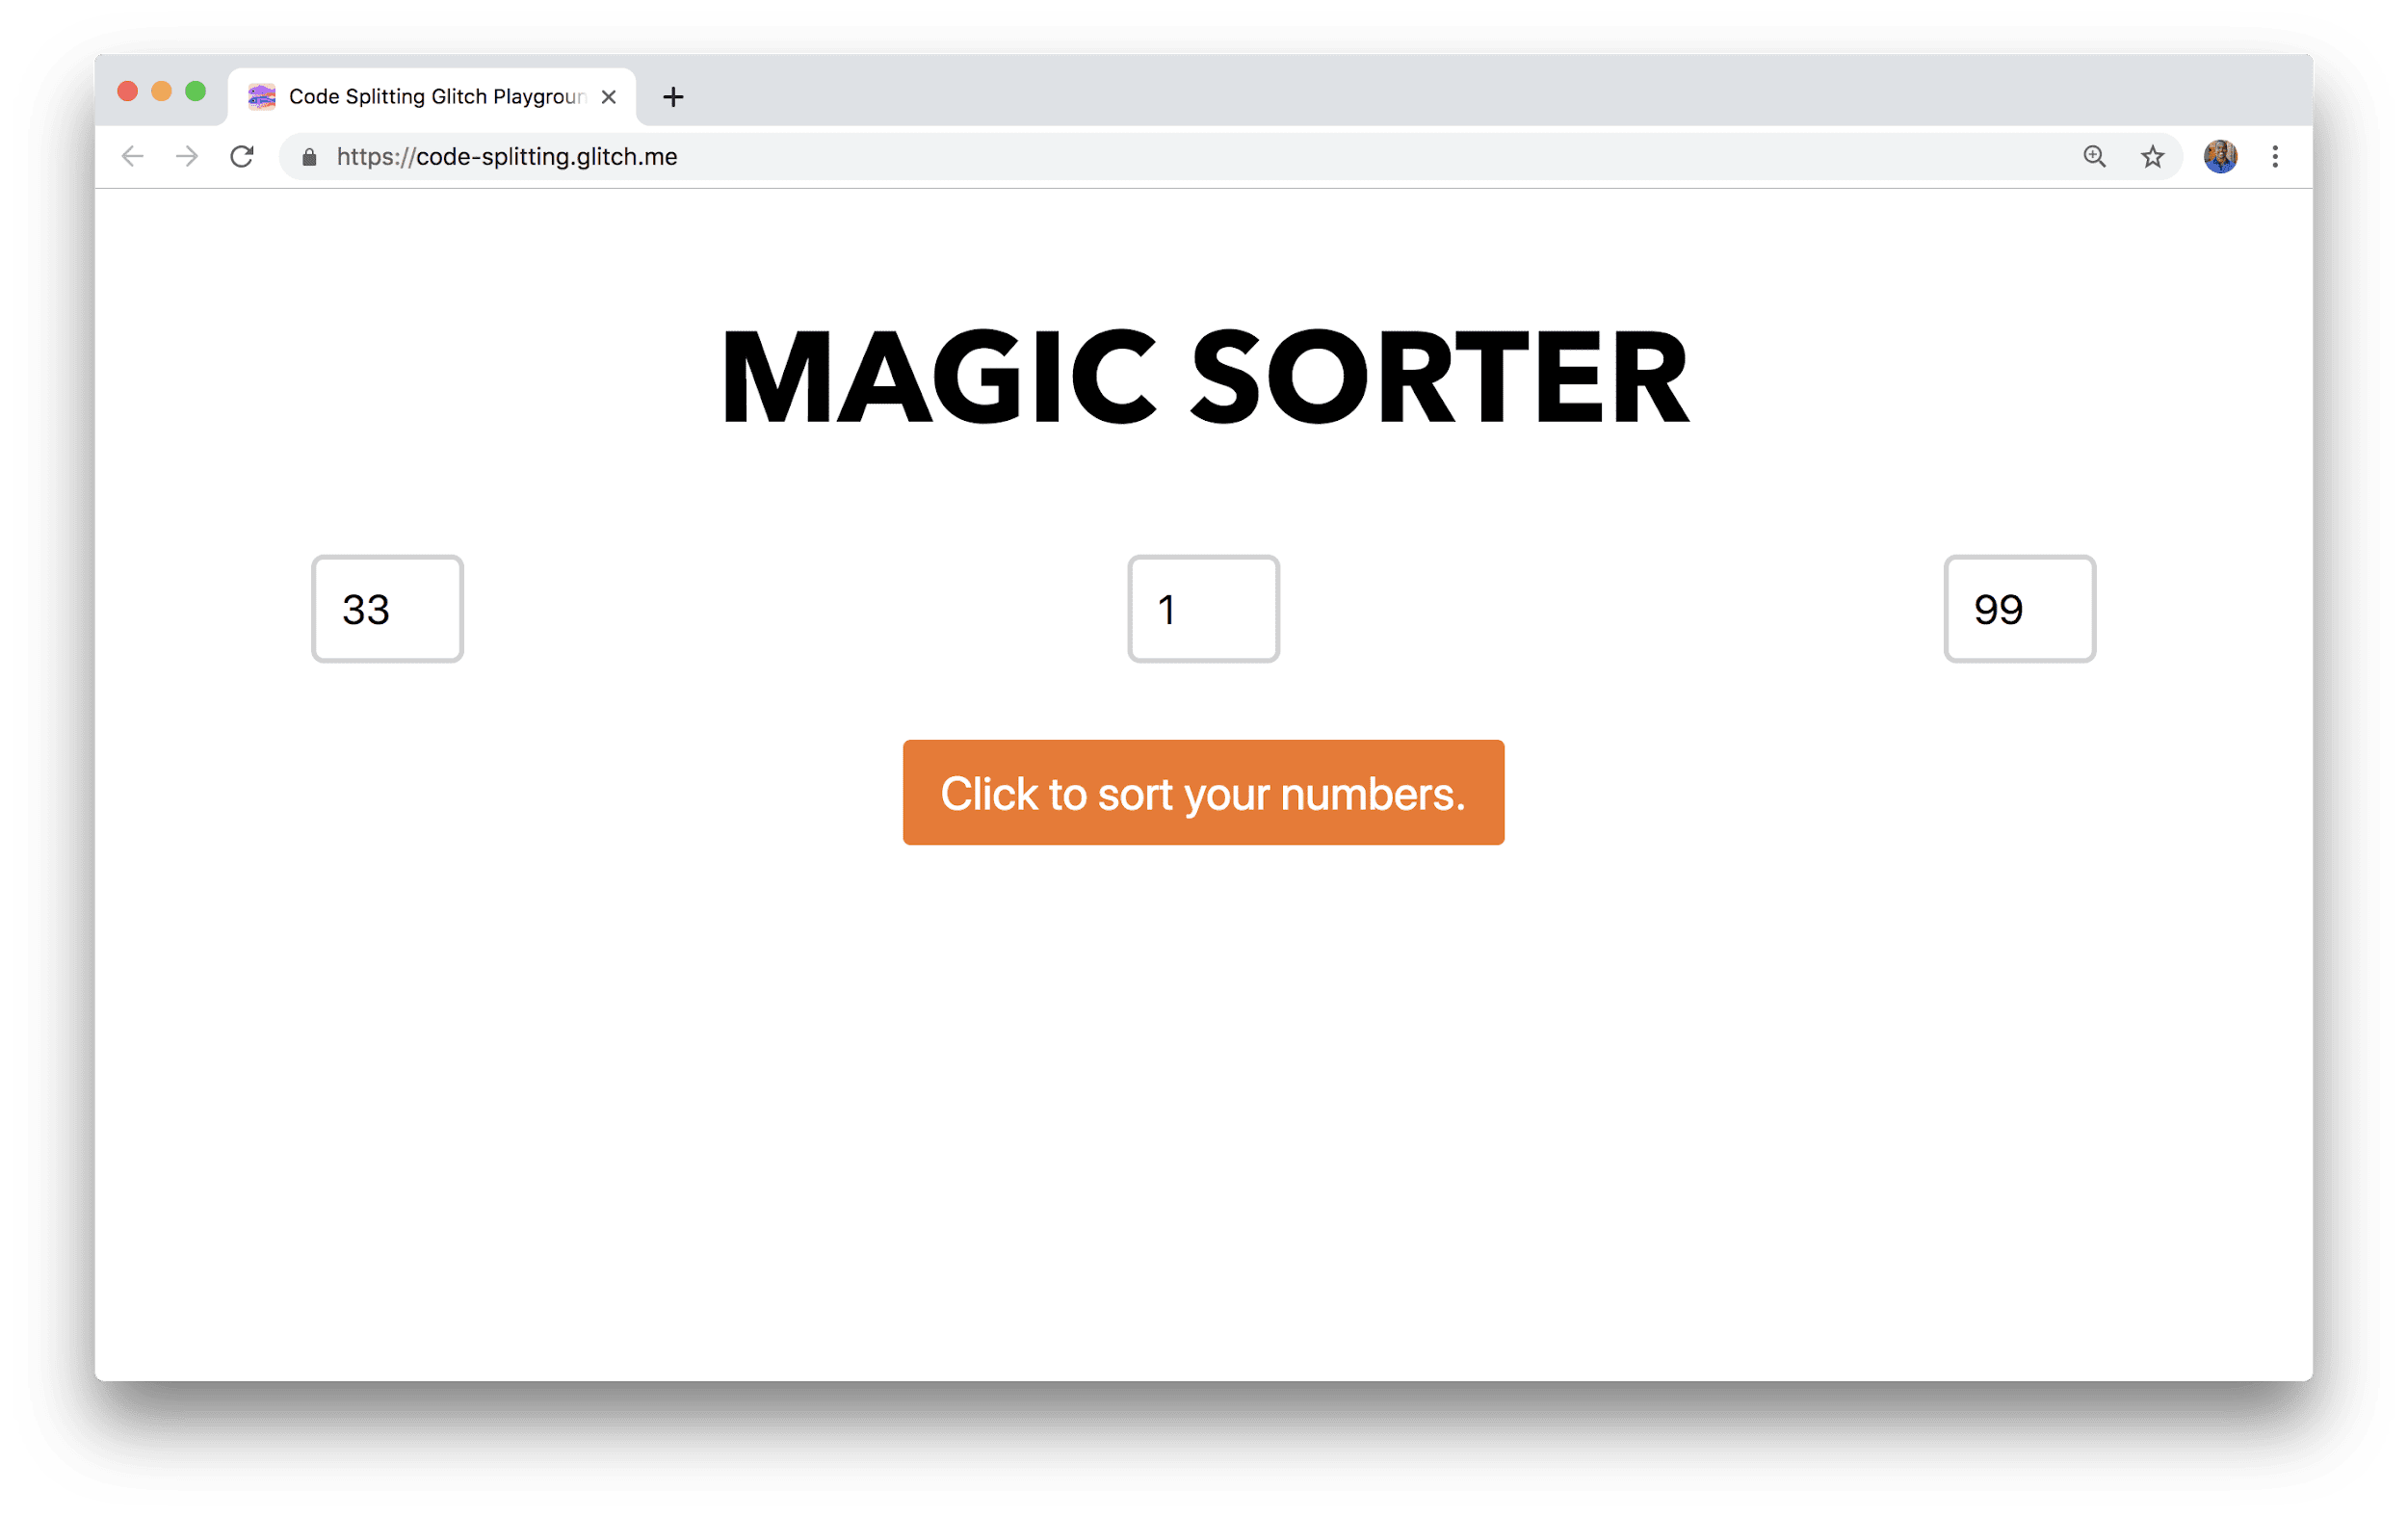 В окне браузера отображается приложение Magic Sorter с тремя полями для ввода чисел и кнопкой сортировки.